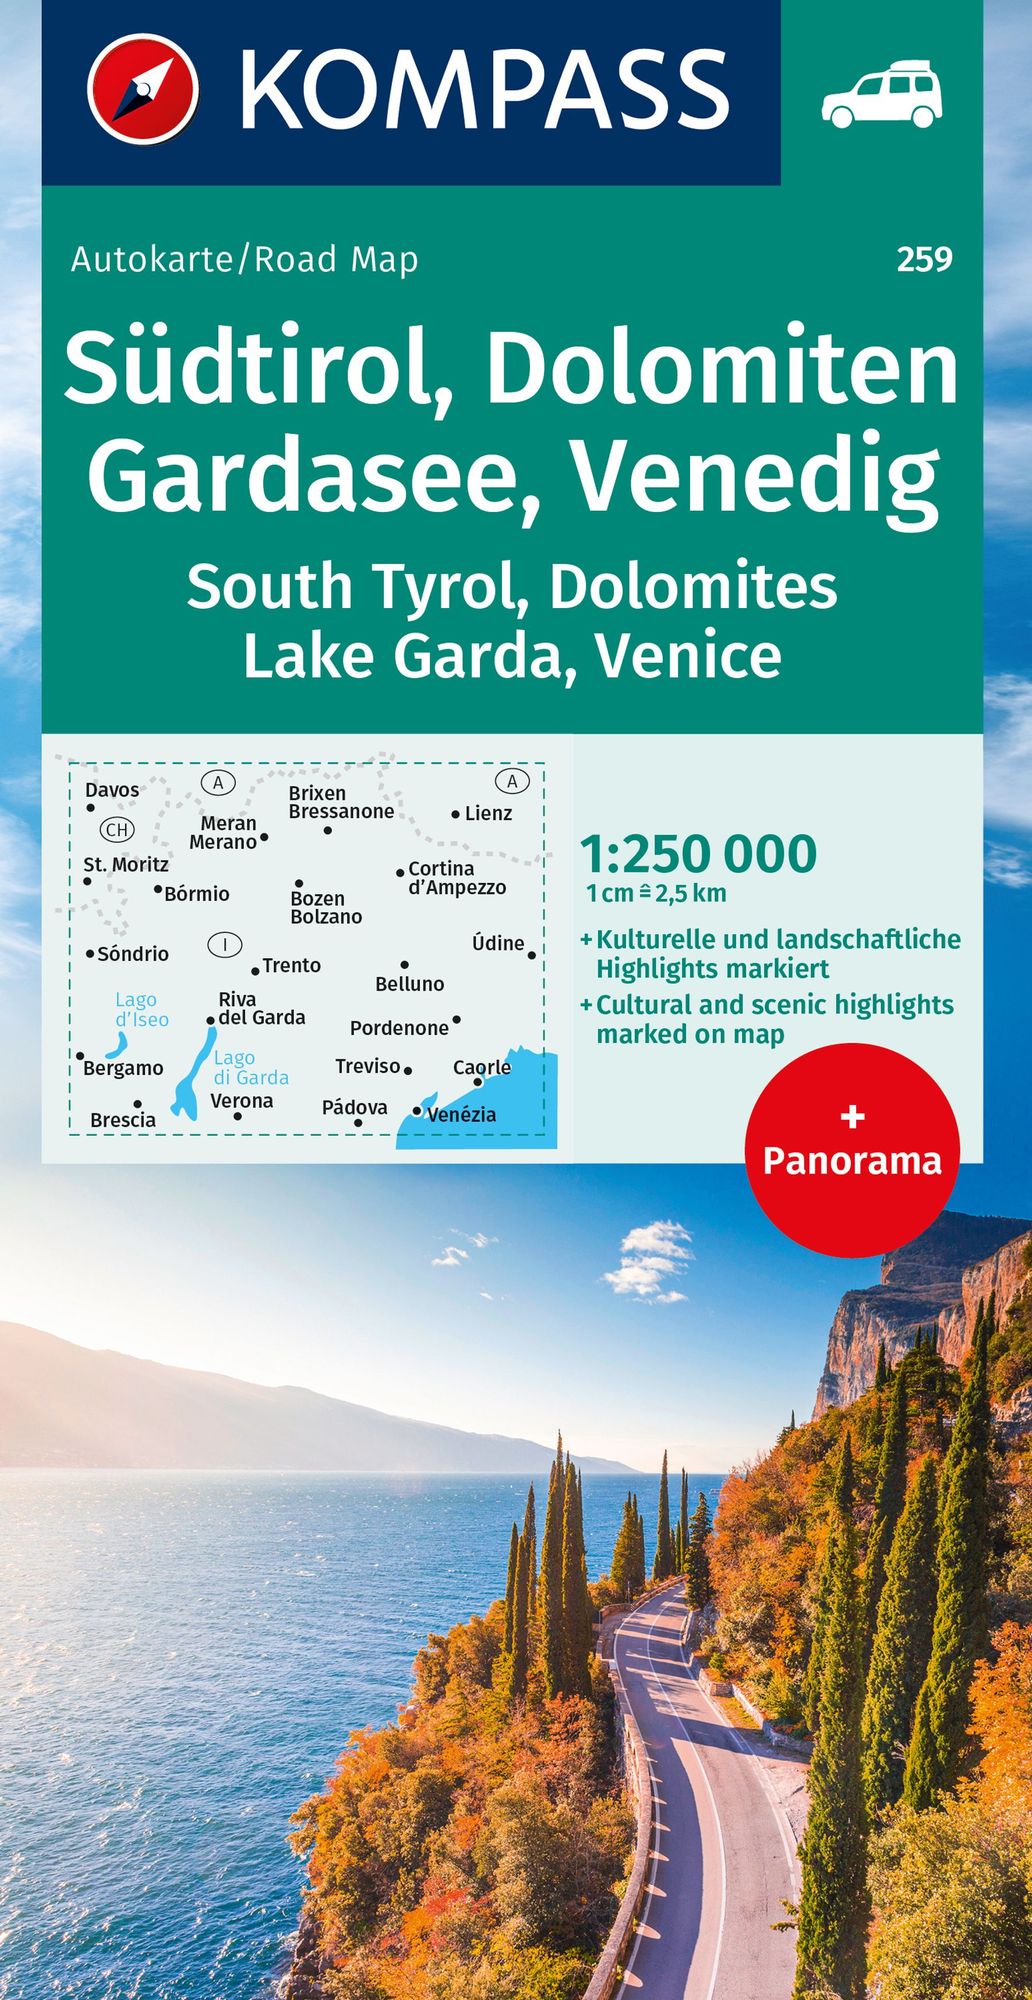 Kompass Autokarte mit Panorama 360 Italien - Gardasee 1:125.000